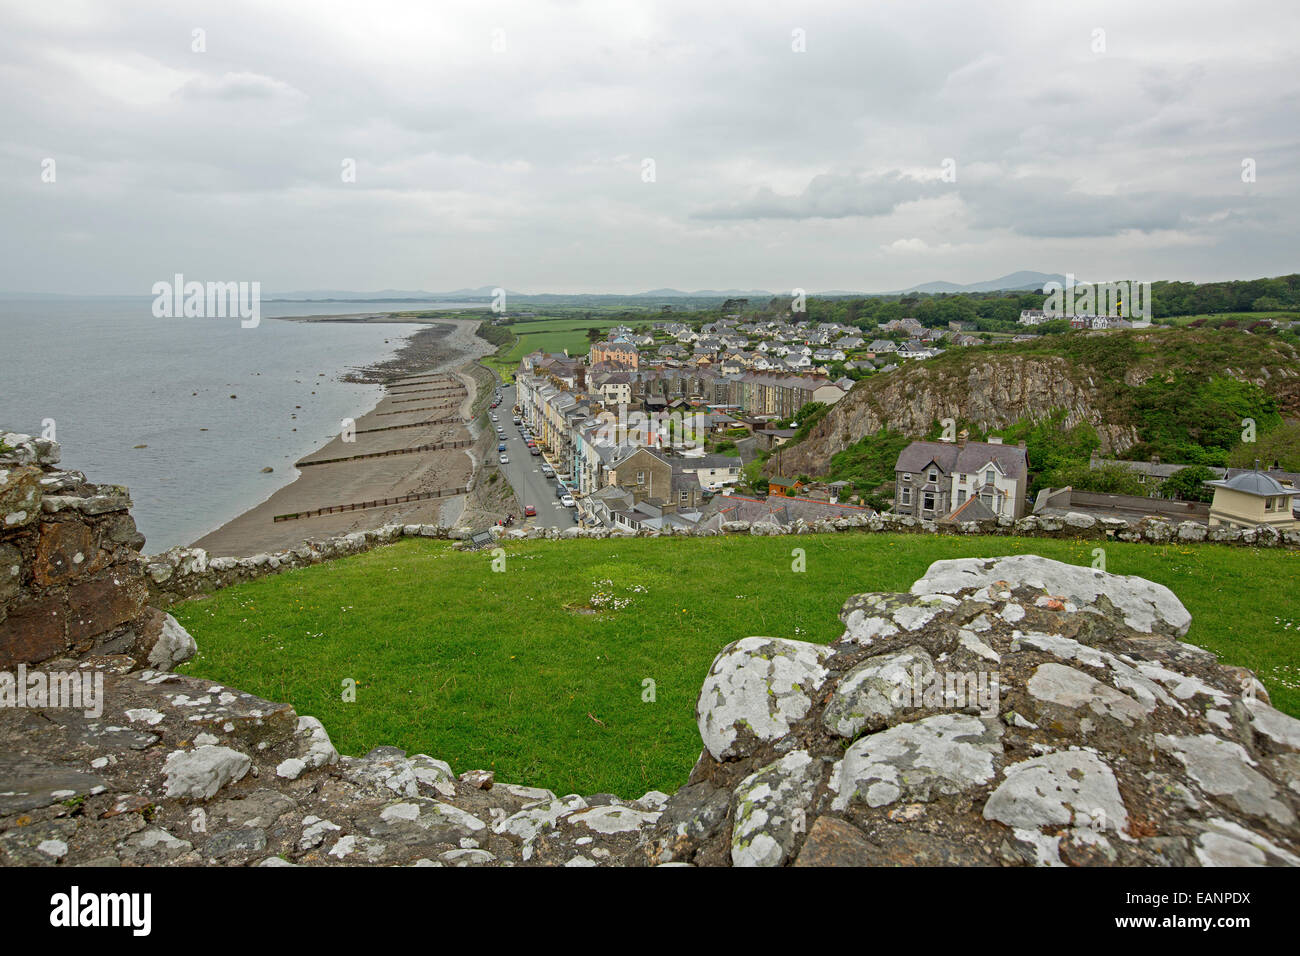 Vista dalla collina del castello, della storica cittadina gallese di Criccieth con case accanto alla spiaggia di sabbia di Cardigan Bay & campi verdi Foto Stock